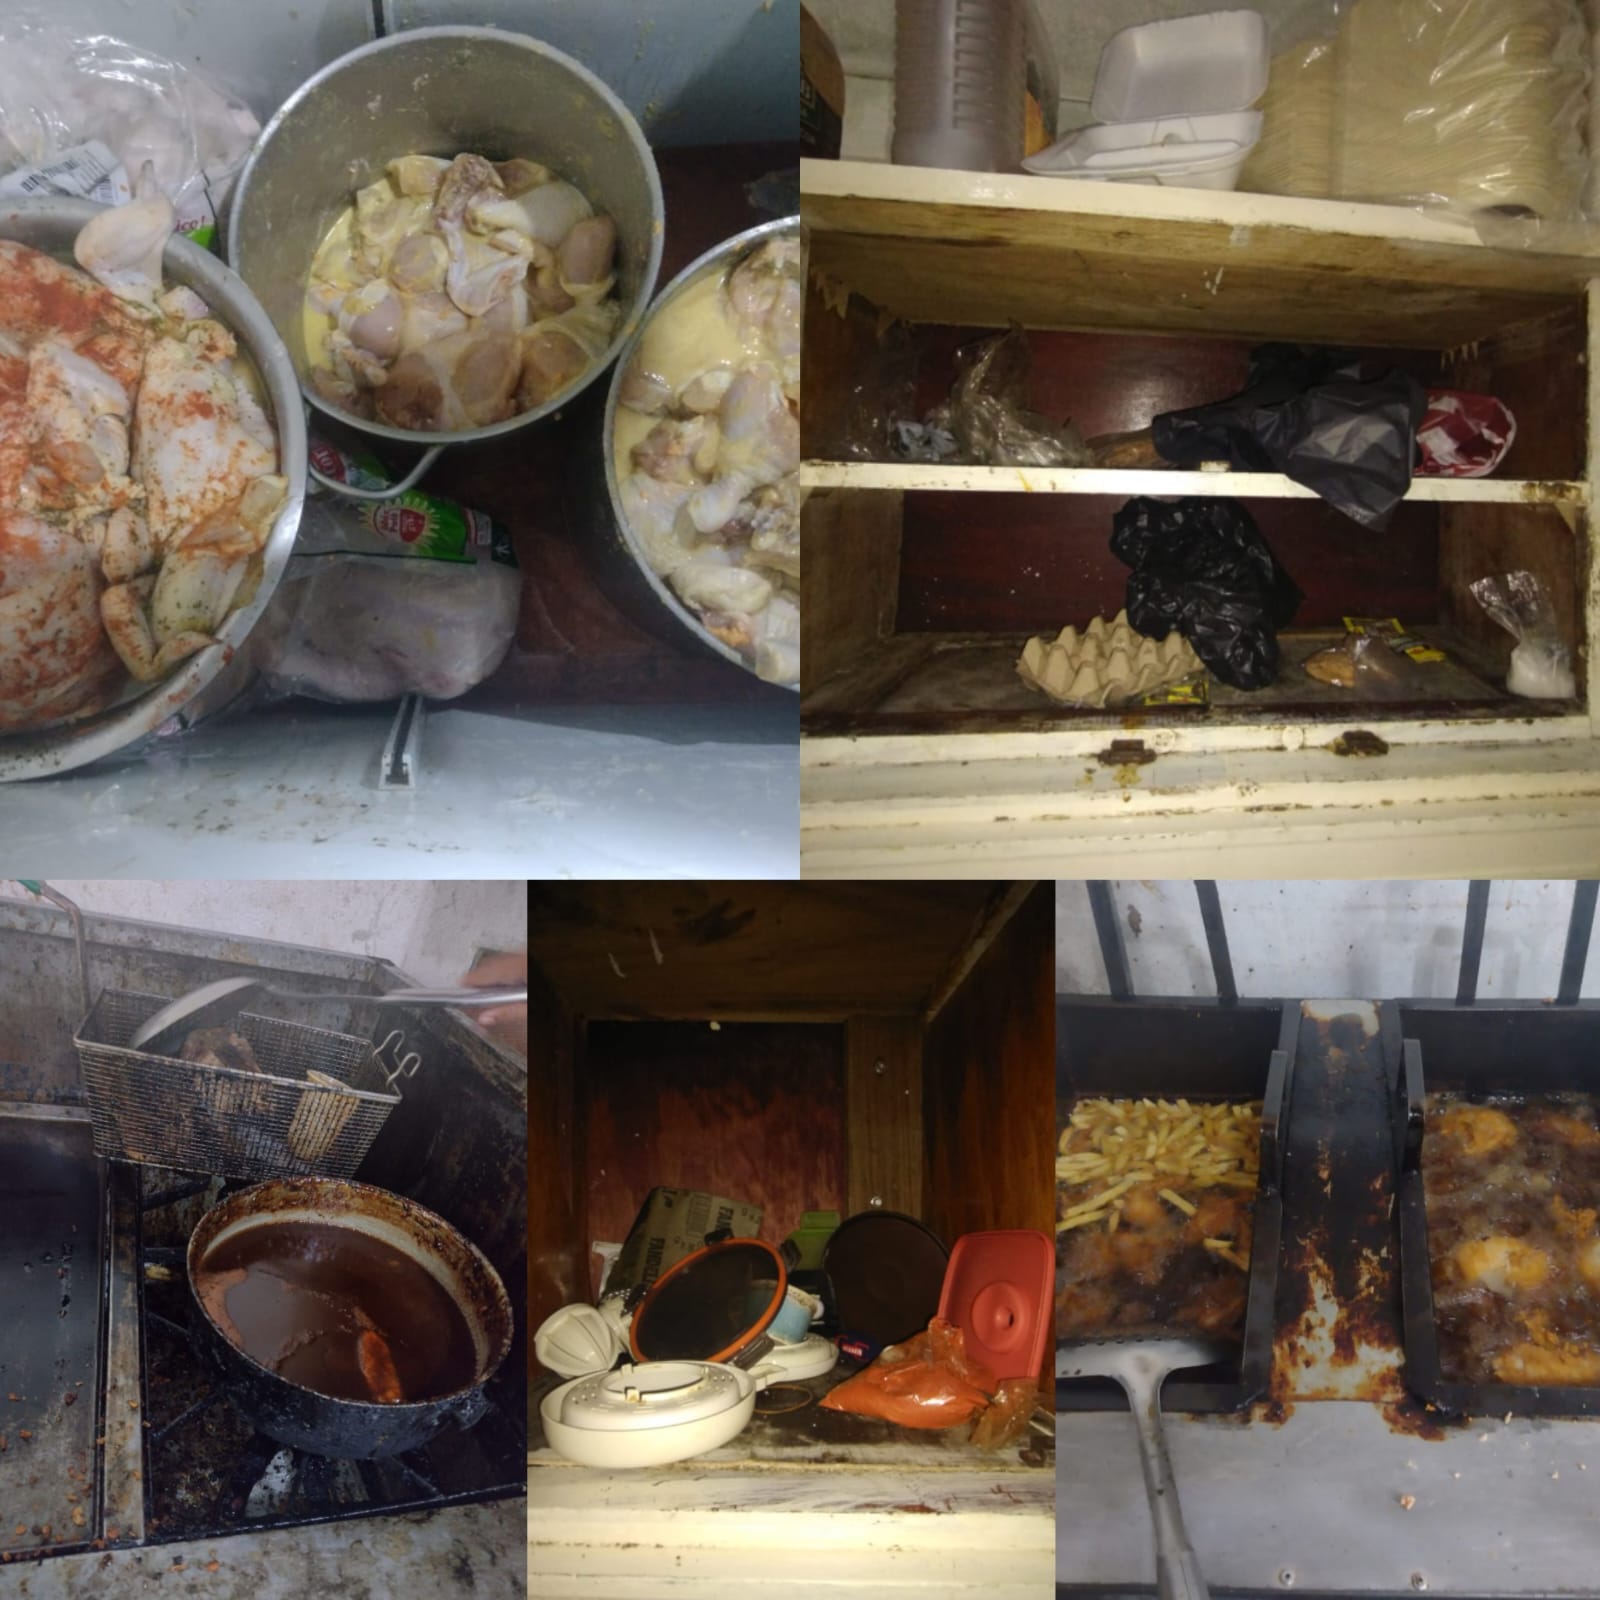 Por pésimas condiciones higiénico-sanitarias la ARSA cierra temporalmente restaurante en la ciudad de Choluteca